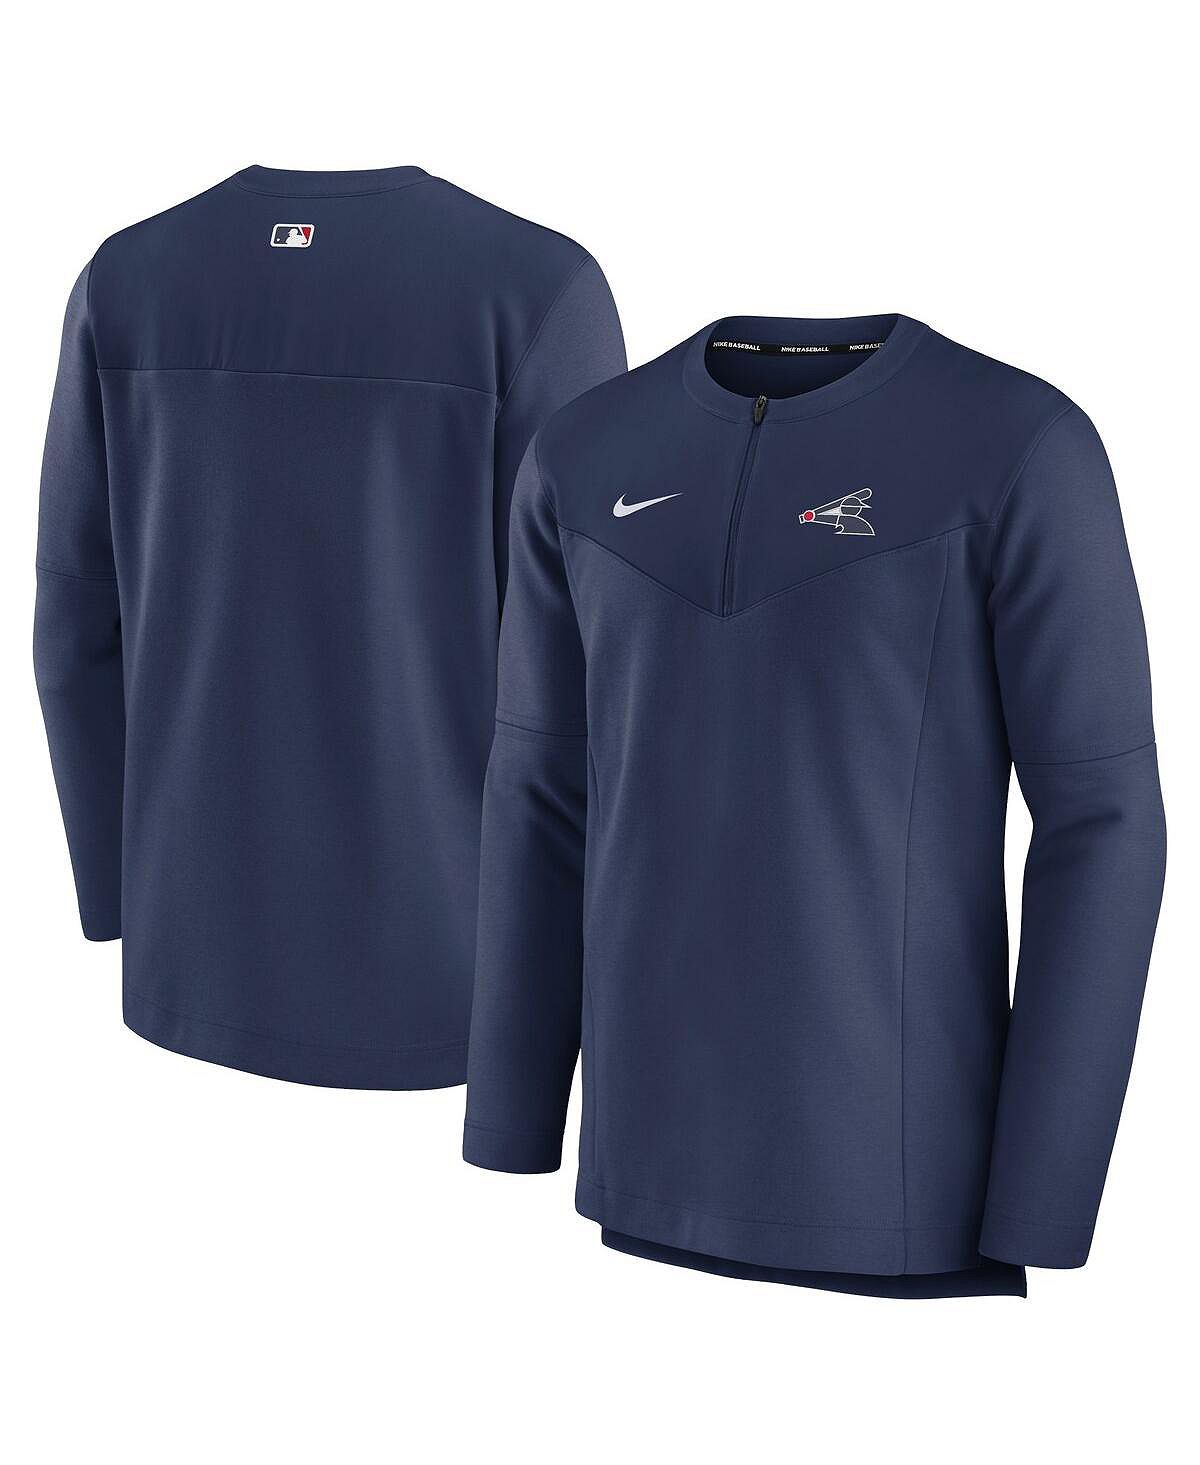 Мужская футболка с молнией до половины длины темно-синего цвета Chicago White Sox Authentic Collection Game Time Performance Nike цена и фото